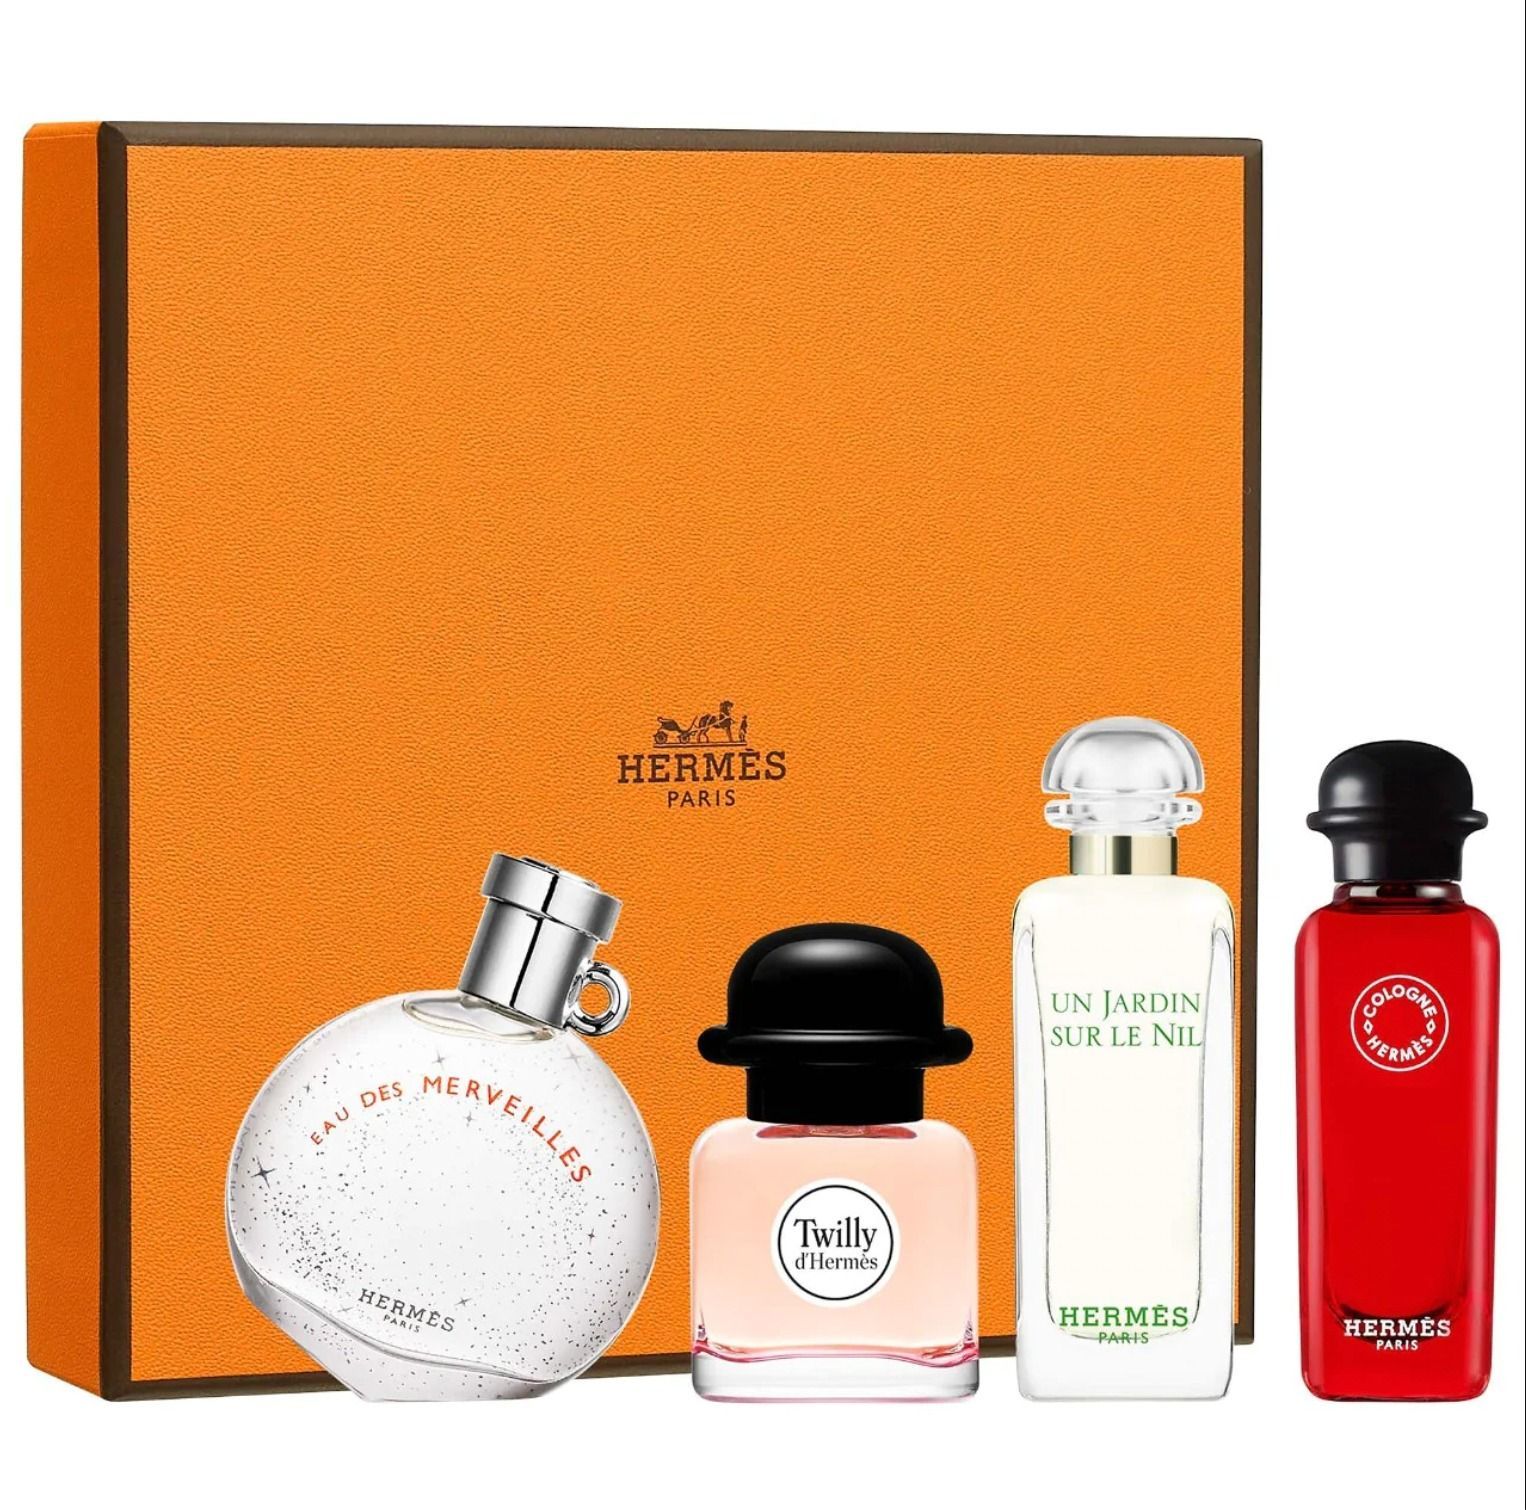 Branded Perfumes & Cologne for Men & Women | PerfumeOutlet